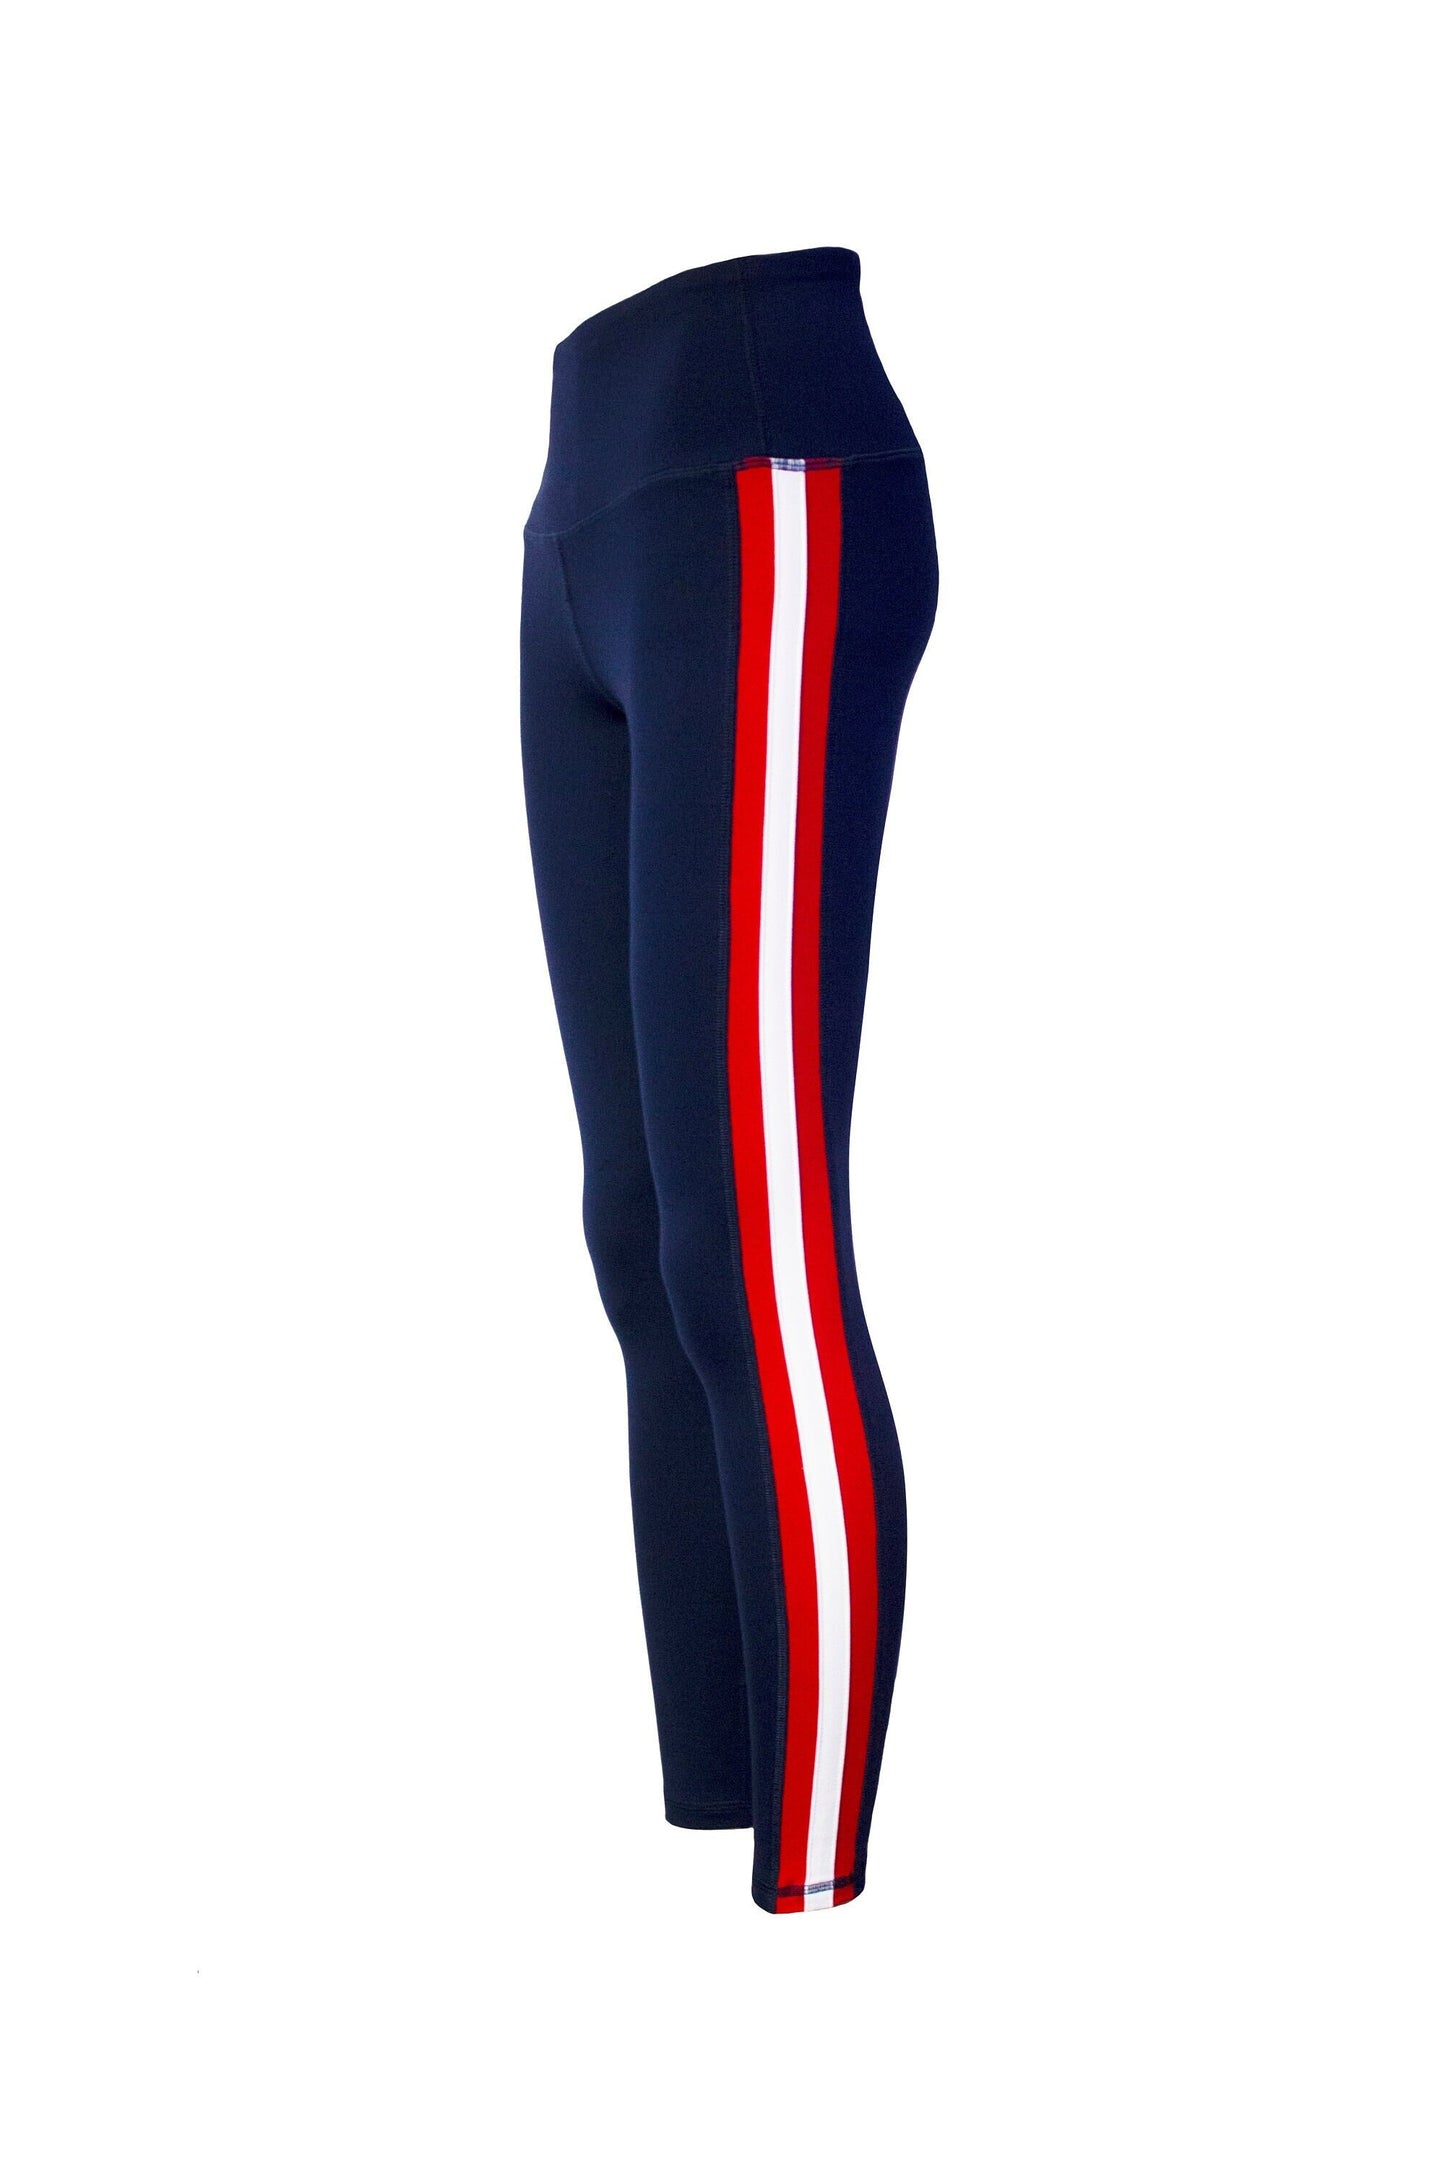 Triple Threat Striped Women's Full Length Yoga Pant Leggings (Navy/Red/White)